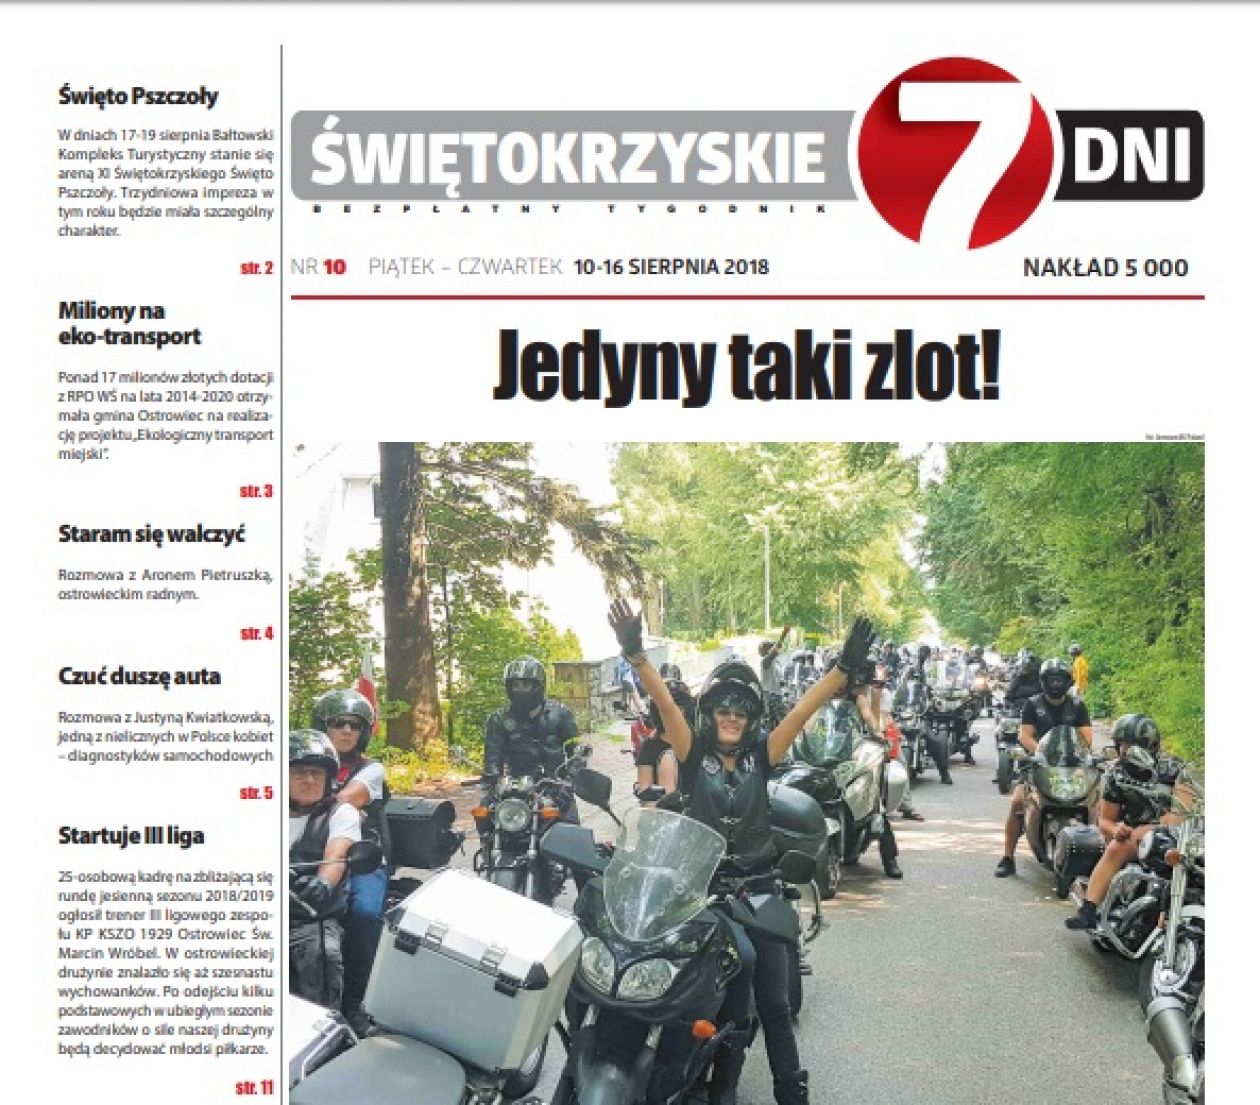 Tygodnik ŚWIĘTOKRZYSKIE 7 DNI nr 10 z 10.08.2018